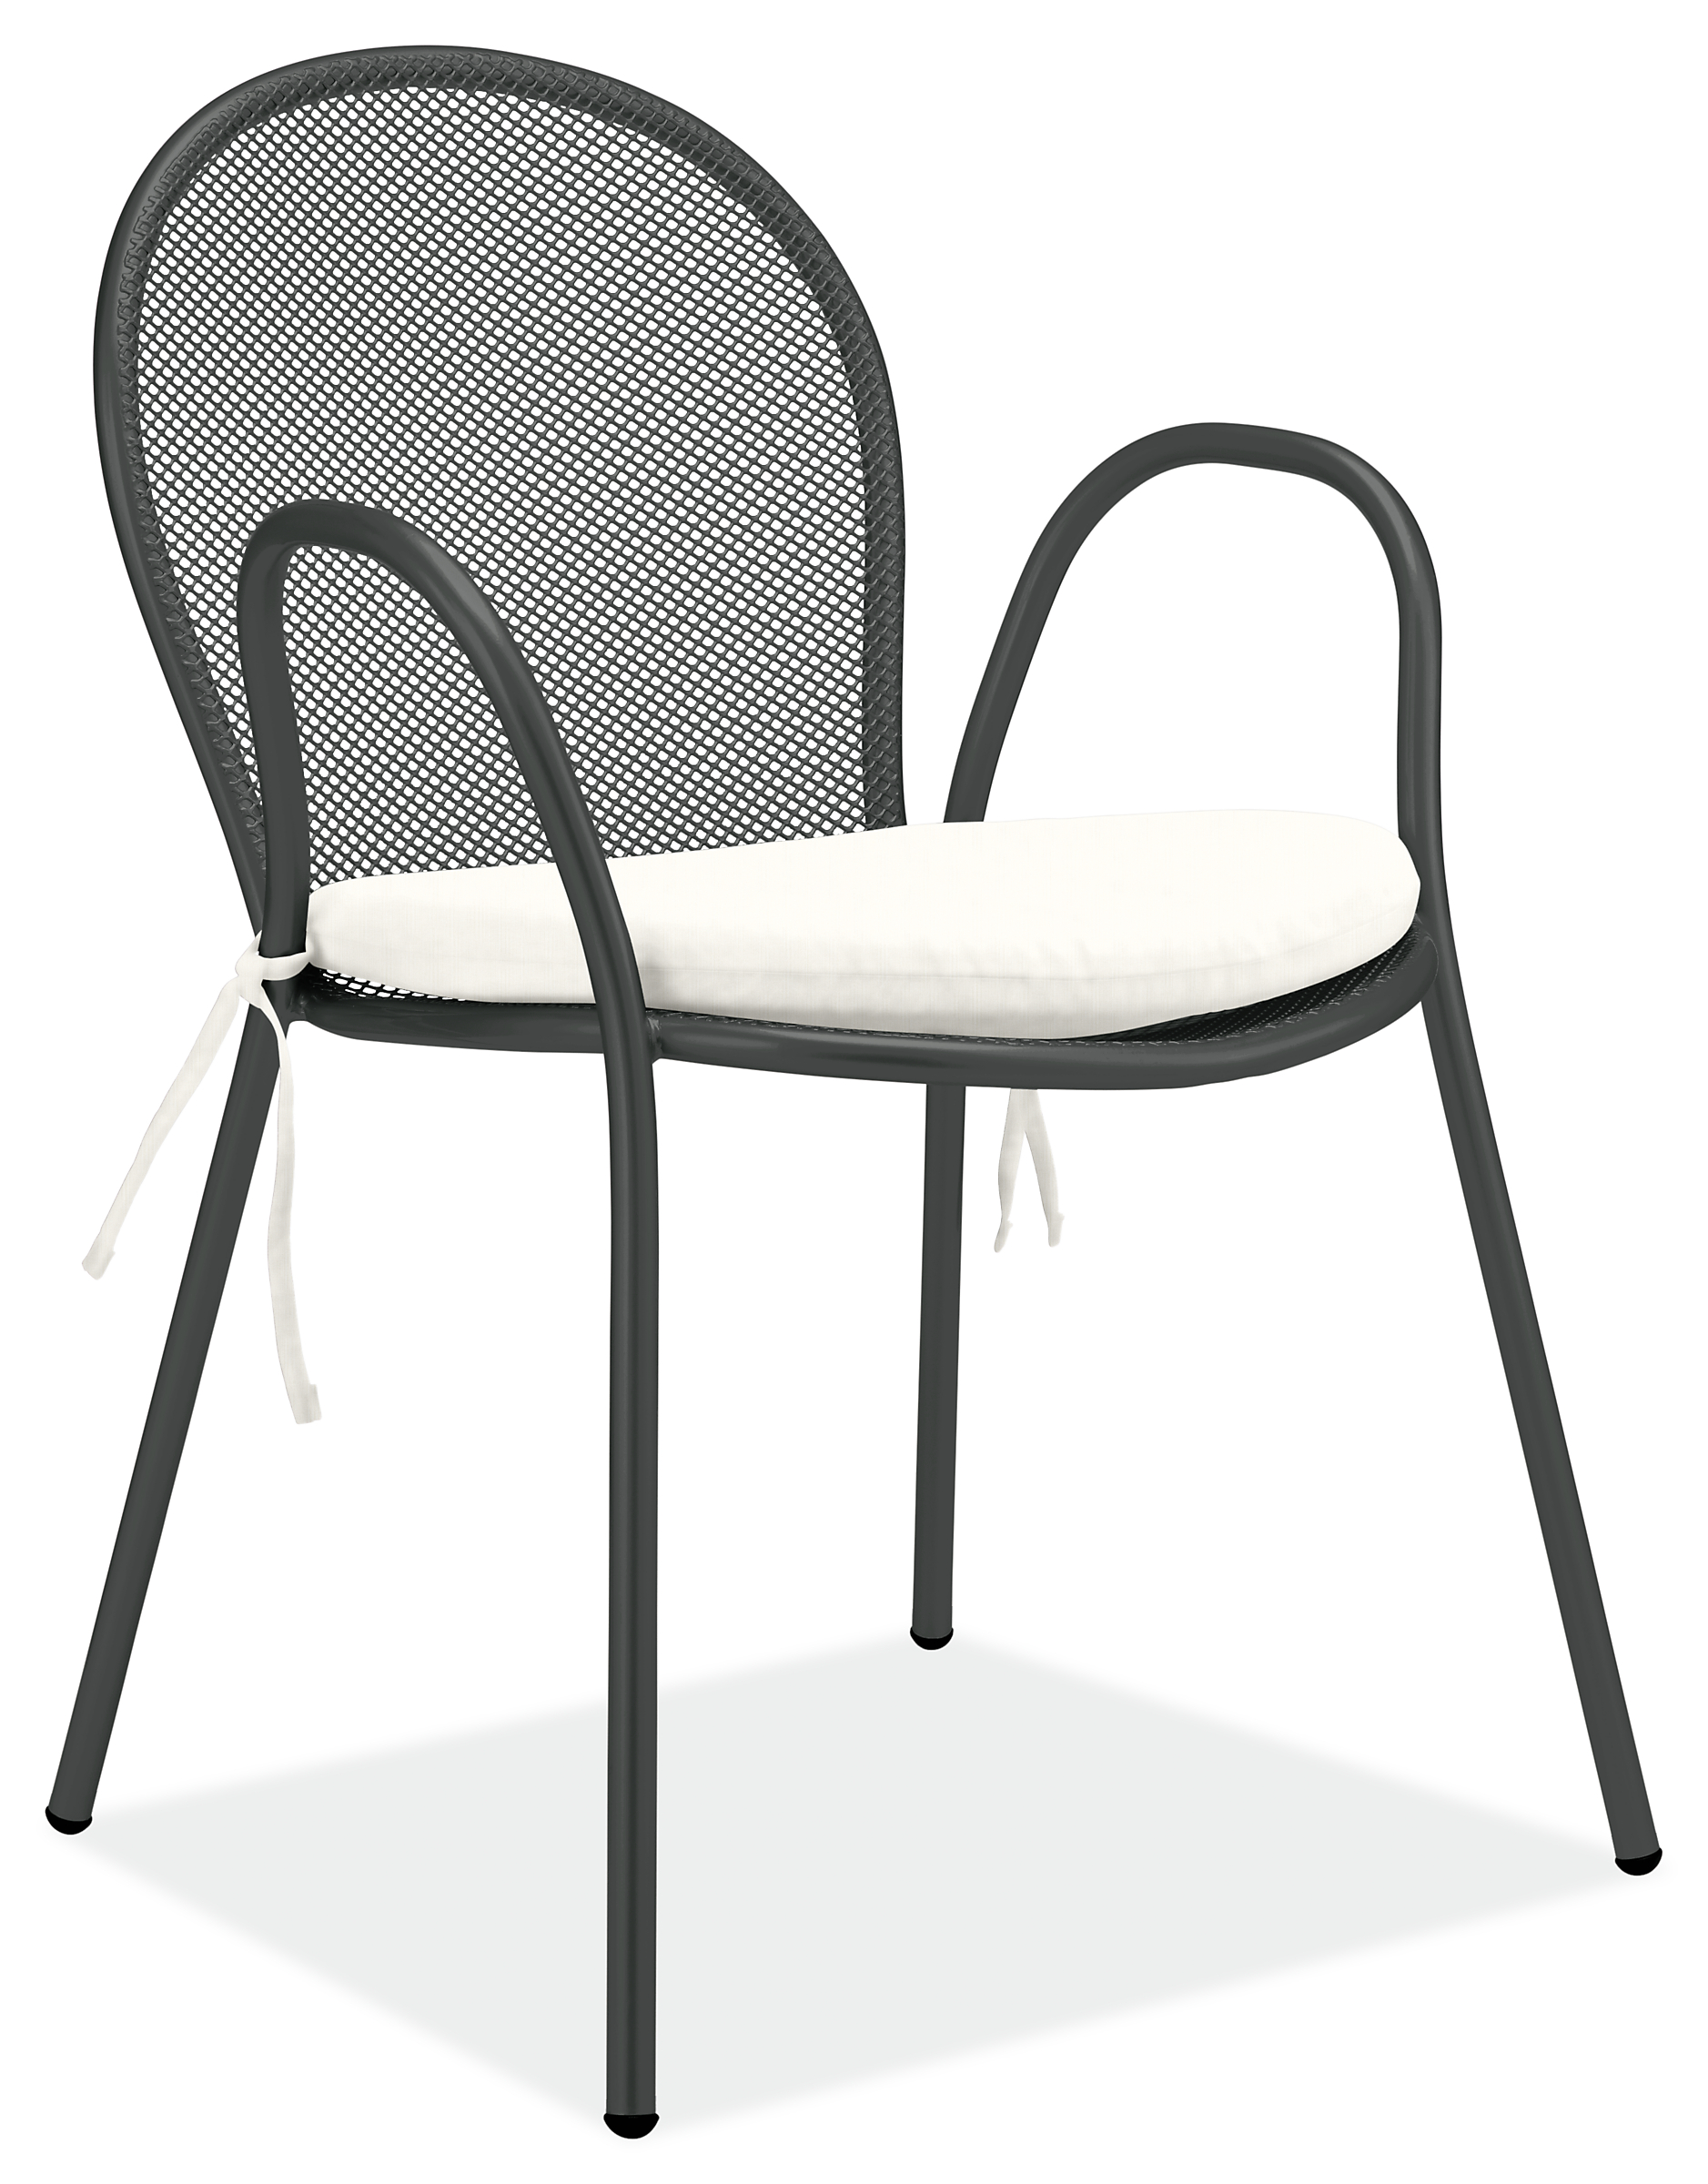 Rio Chair in Graphite with Cushion in Sunbrella Canvas White